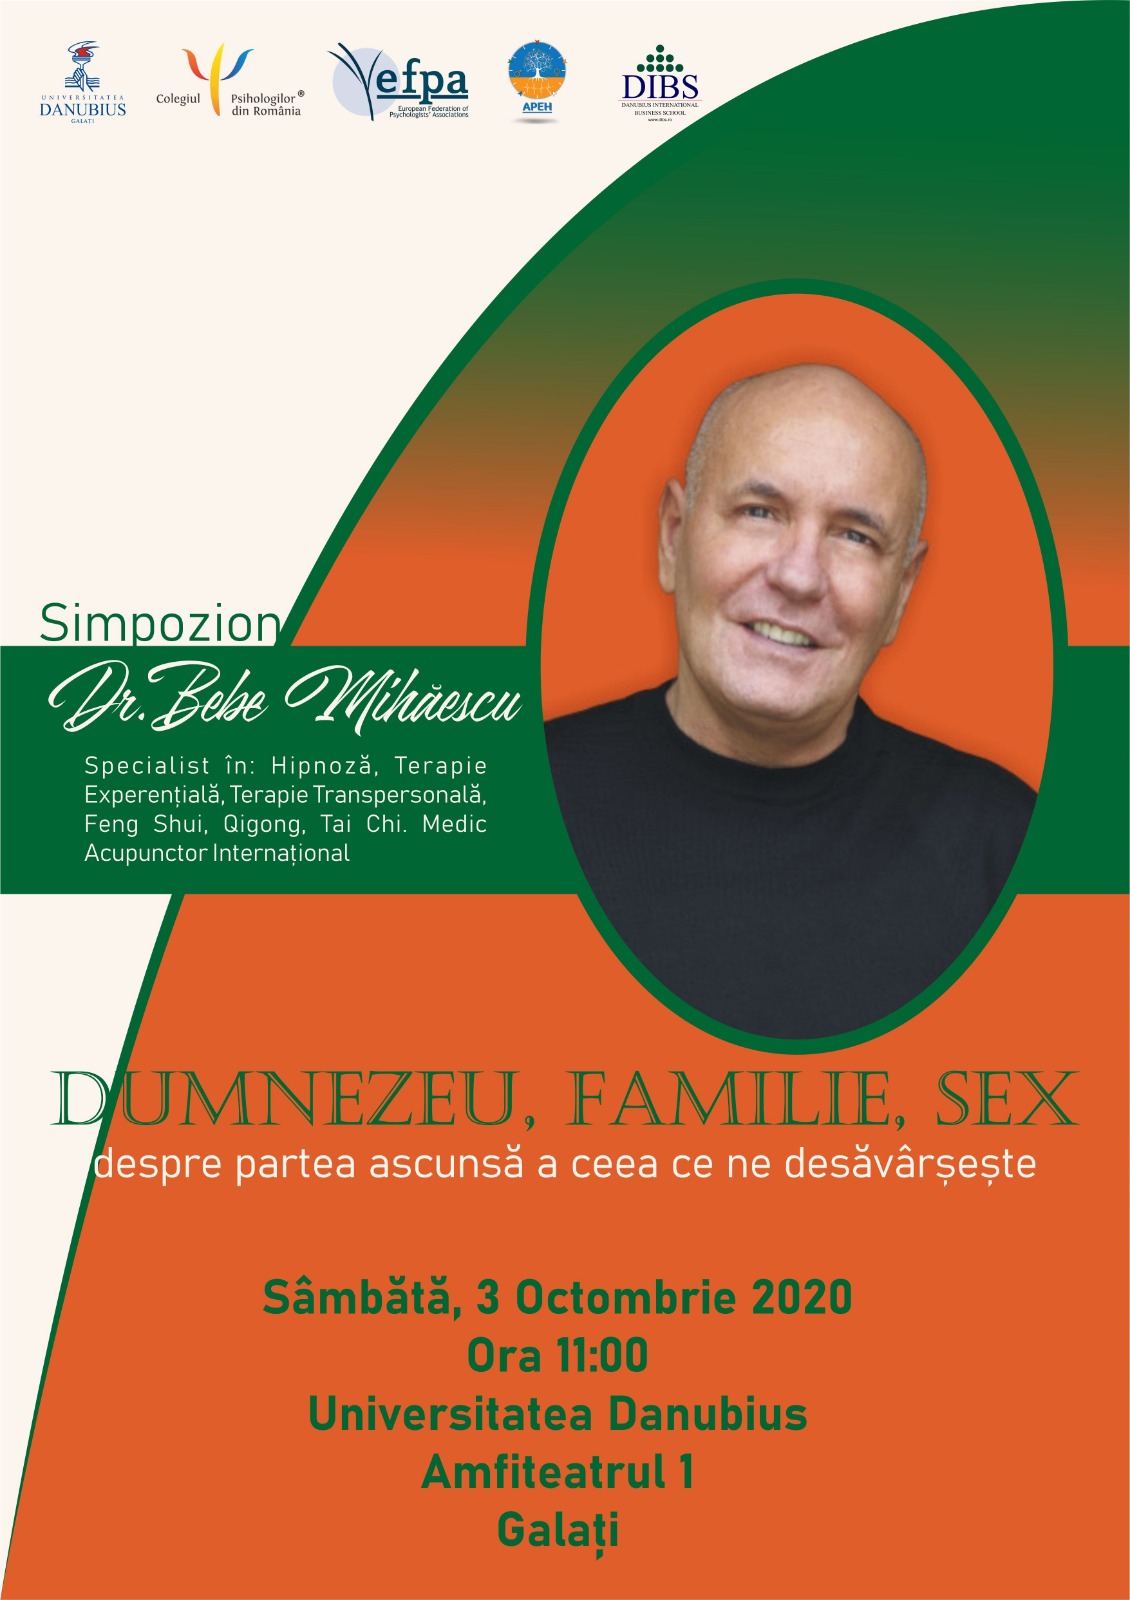 DR. BEBE MIHAESCU VA INVITĂ LA SIMPOZIONUL CU TEMA  ”DUMNEZEU, FAMILIE ȘI SEX”